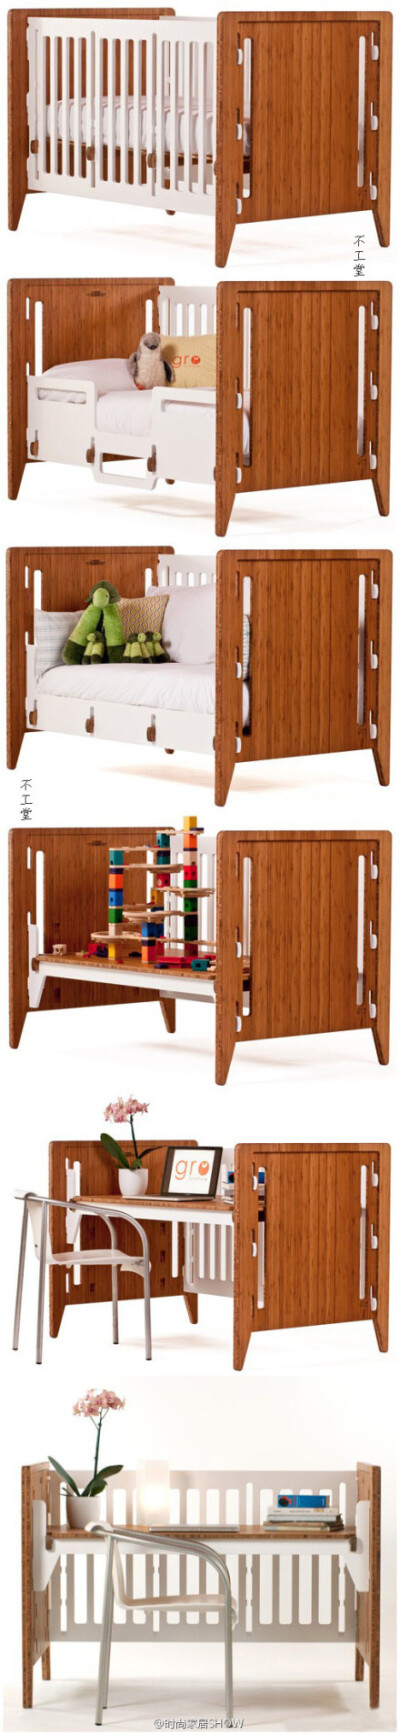 小了的婴儿床怎么处理，送人还是丢掉？Gro Furniture告诉你不同的答案：模块化的设计，让床可扩展成沙发、书桌等不同家具；无螺钉、拼插玩具式的组装方式，简单方便；竹子材质的使用更是环保。总之，让婴儿床好用、…